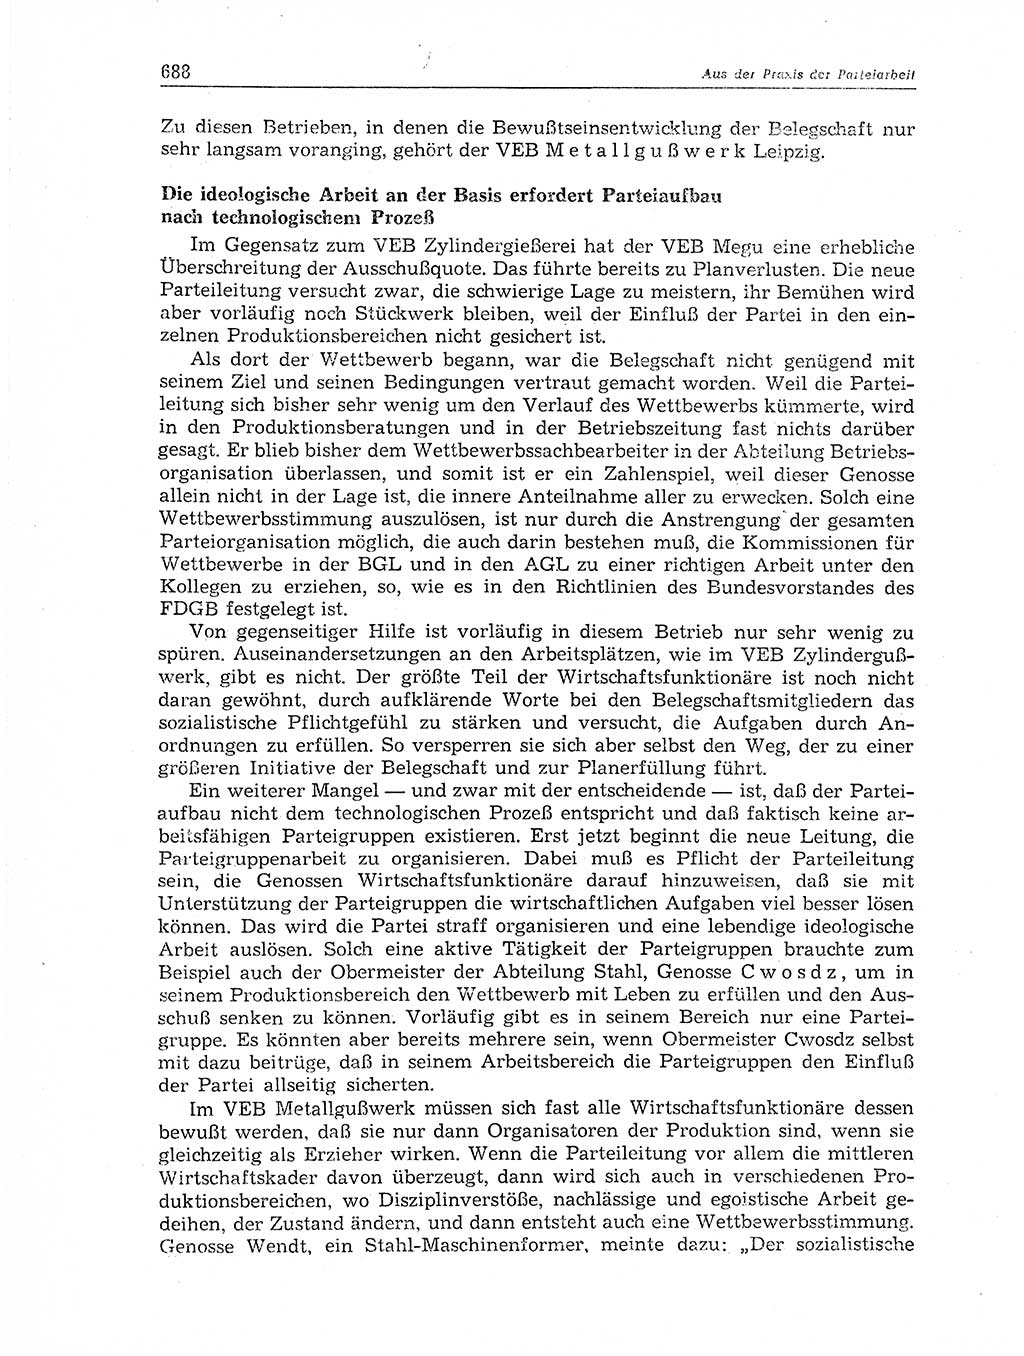 Neuer Weg (NW), Organ des Zentralkomitees (ZK) der SED (Sozialistische Einheitspartei Deutschlands) fÃ¼r Fragen des Parteiaufbaus und des Parteilebens, 11. Jahrgang [Deutsche Demokratische Republik (DDR)] 1956, Seite 688 (NW ZK SED DDR 1956, S. 688)